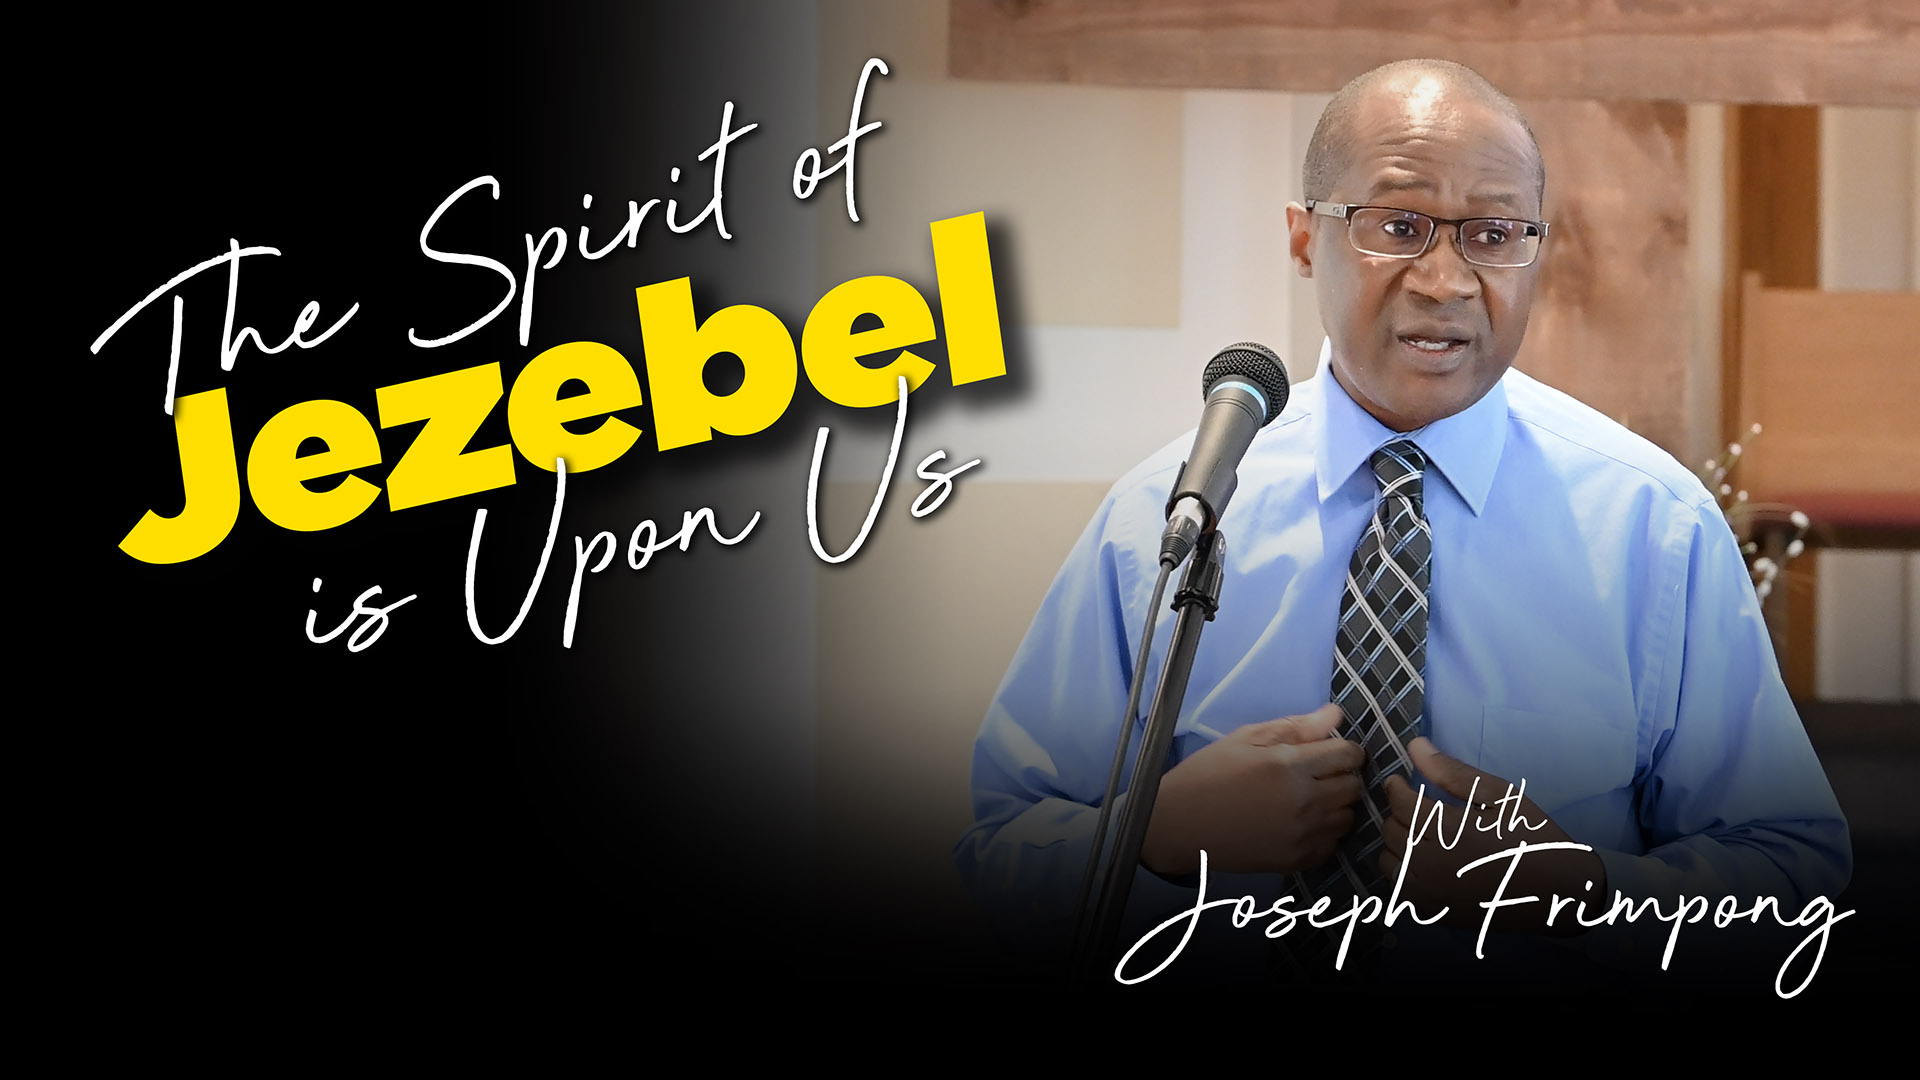 The Spirit of Jezebel